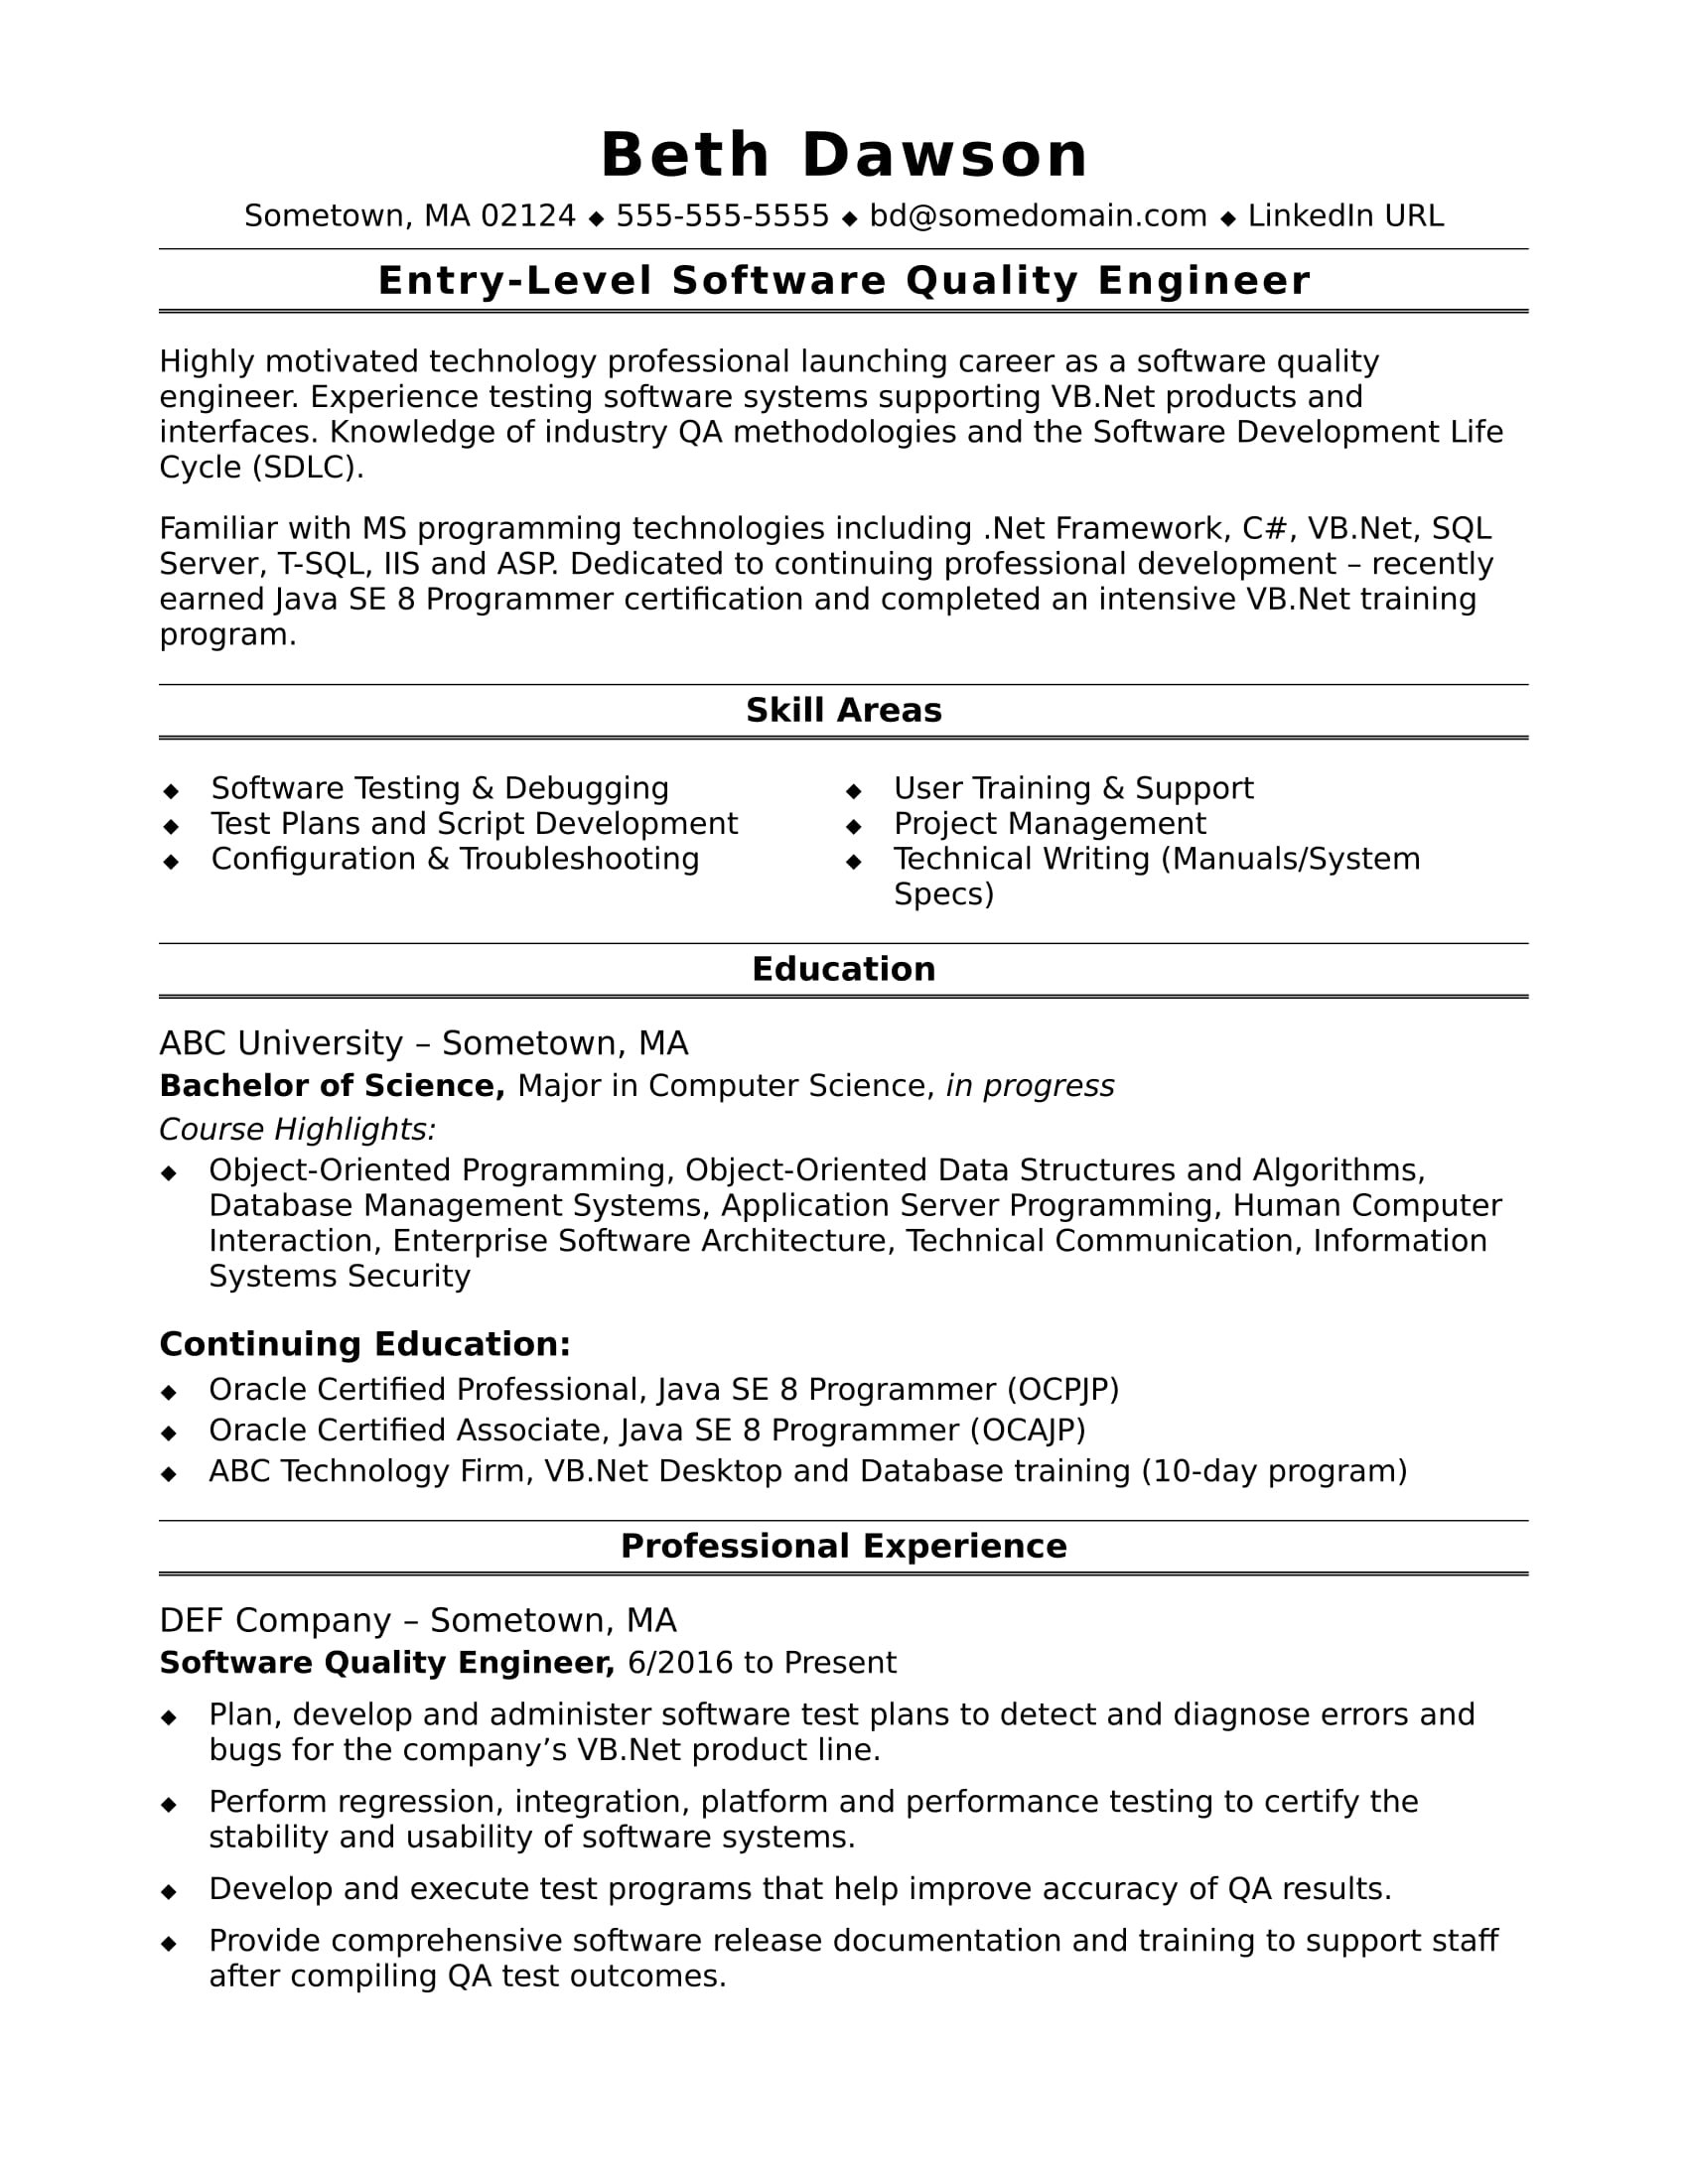 Sample Resume for Junior Qa Tester Entry-level Qa Engineer Resume Monster.com